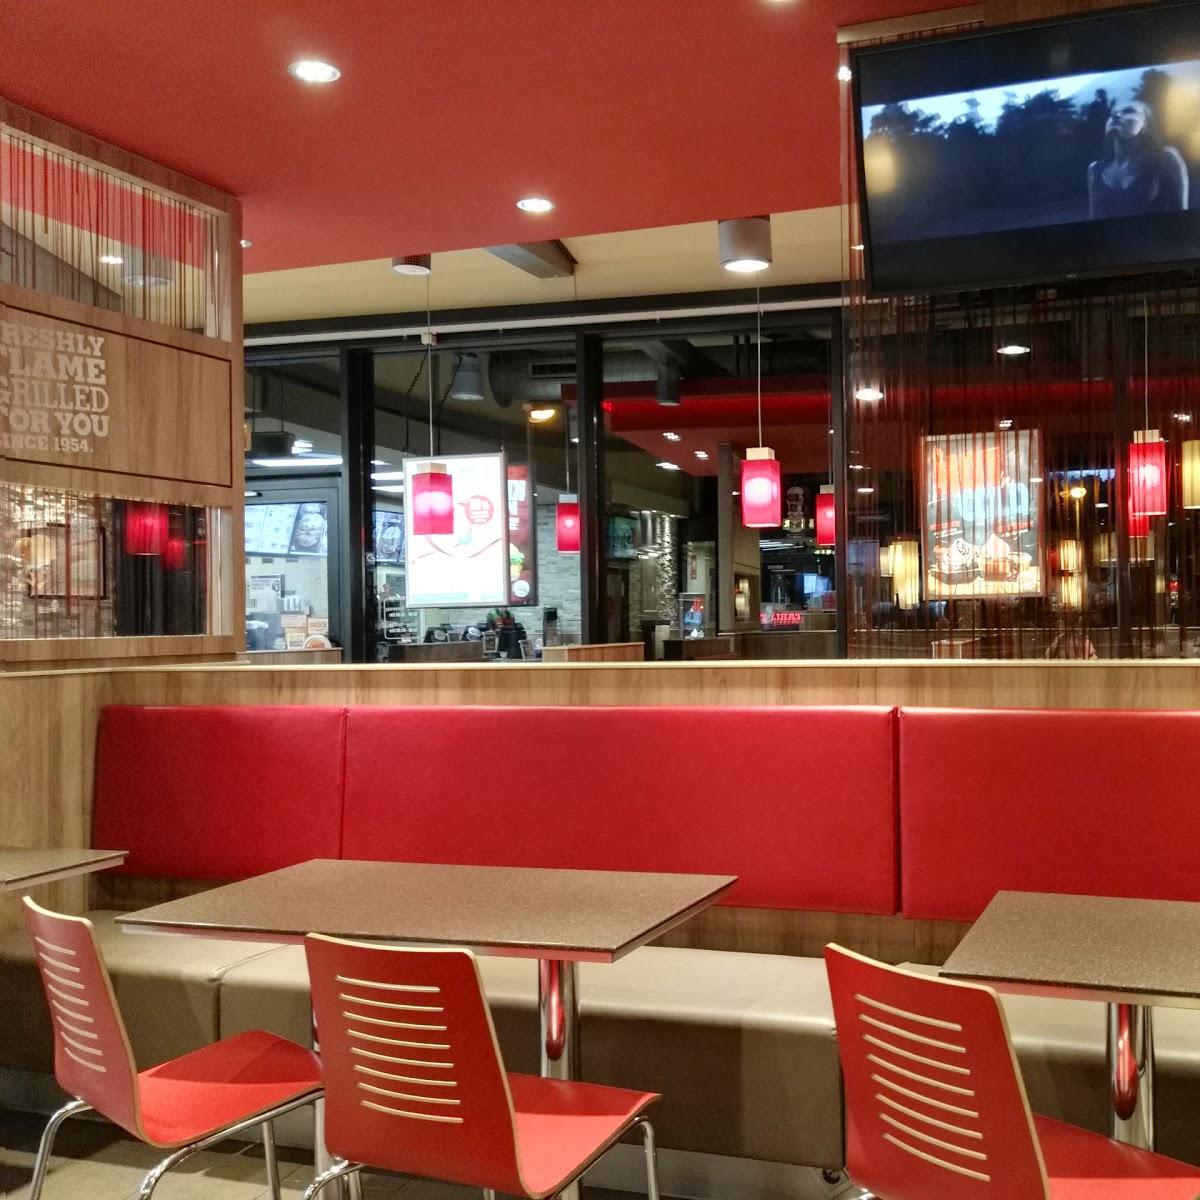 Restaurant "Burger King" in Stralsund